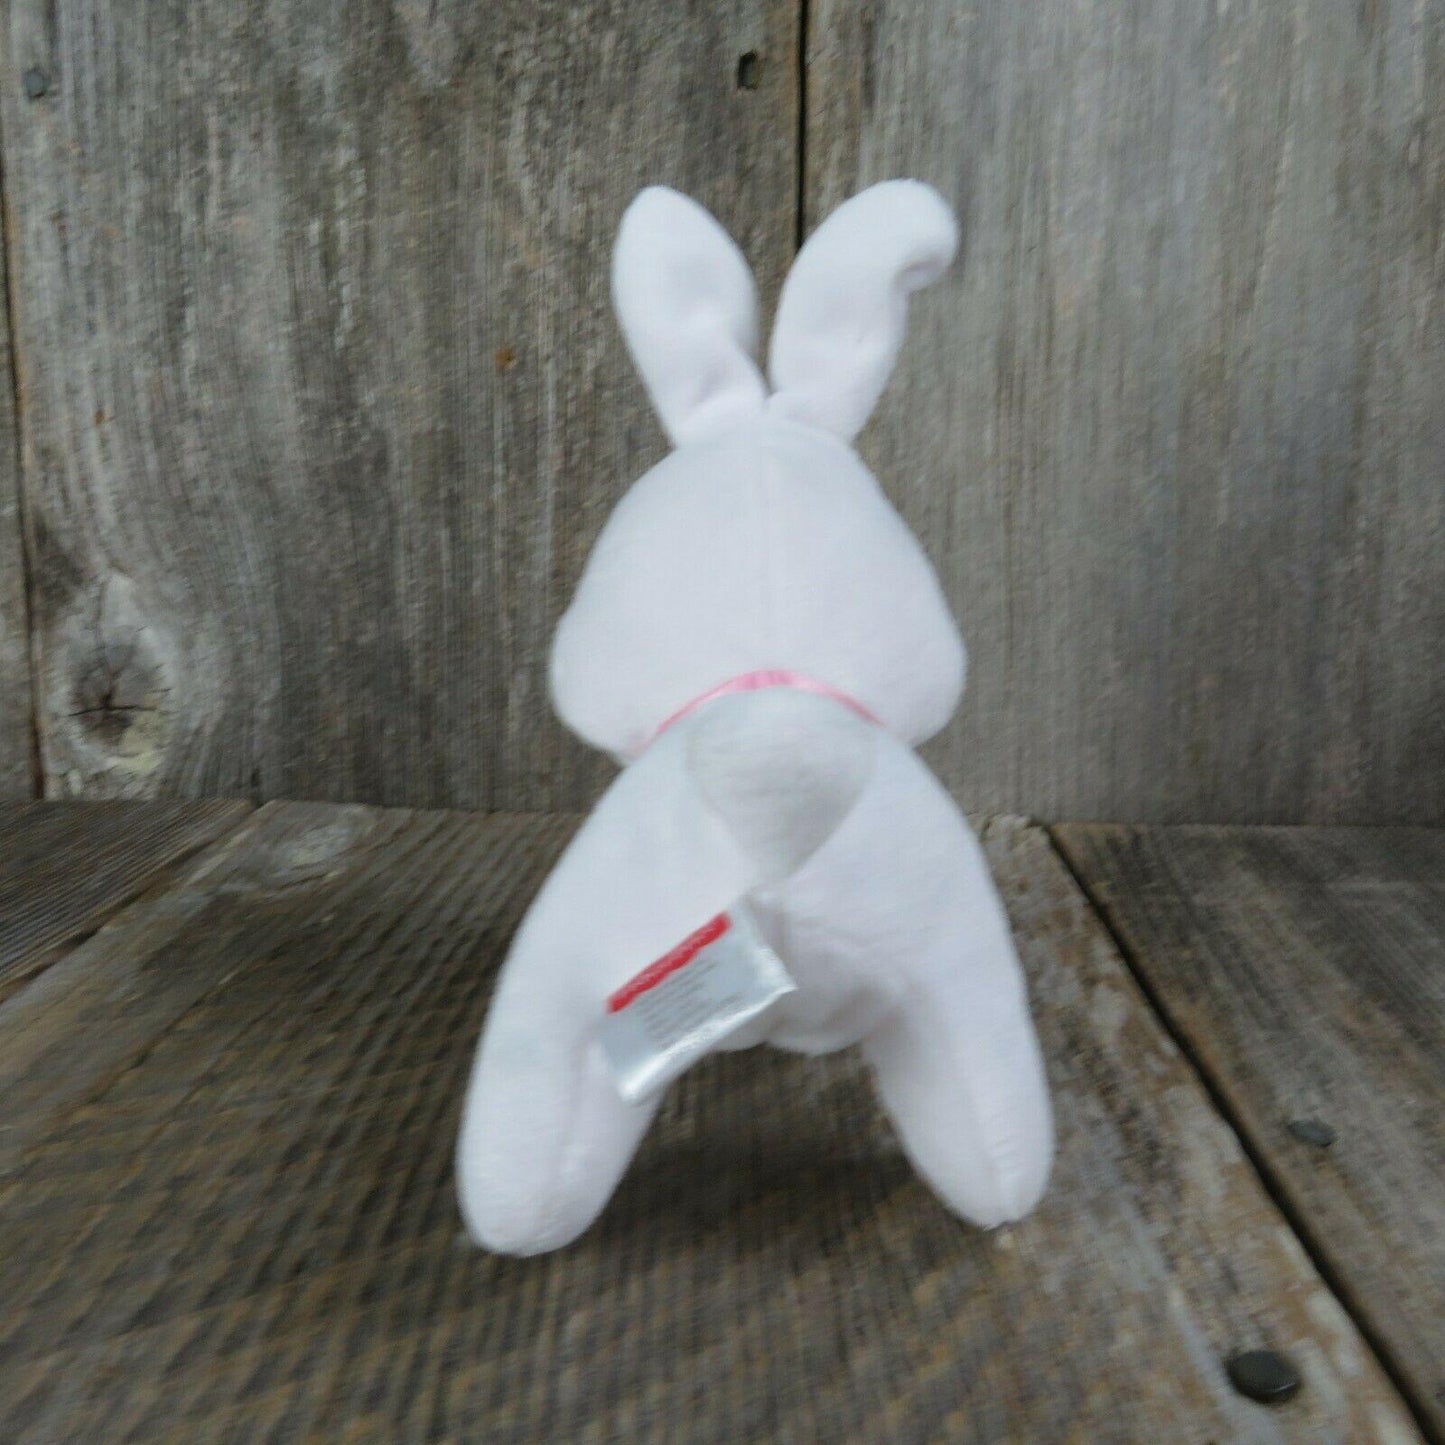 White Bunny Plush Rabbit Fisher Price Sewn Eyes Pink Nose Ears Mattel 2013